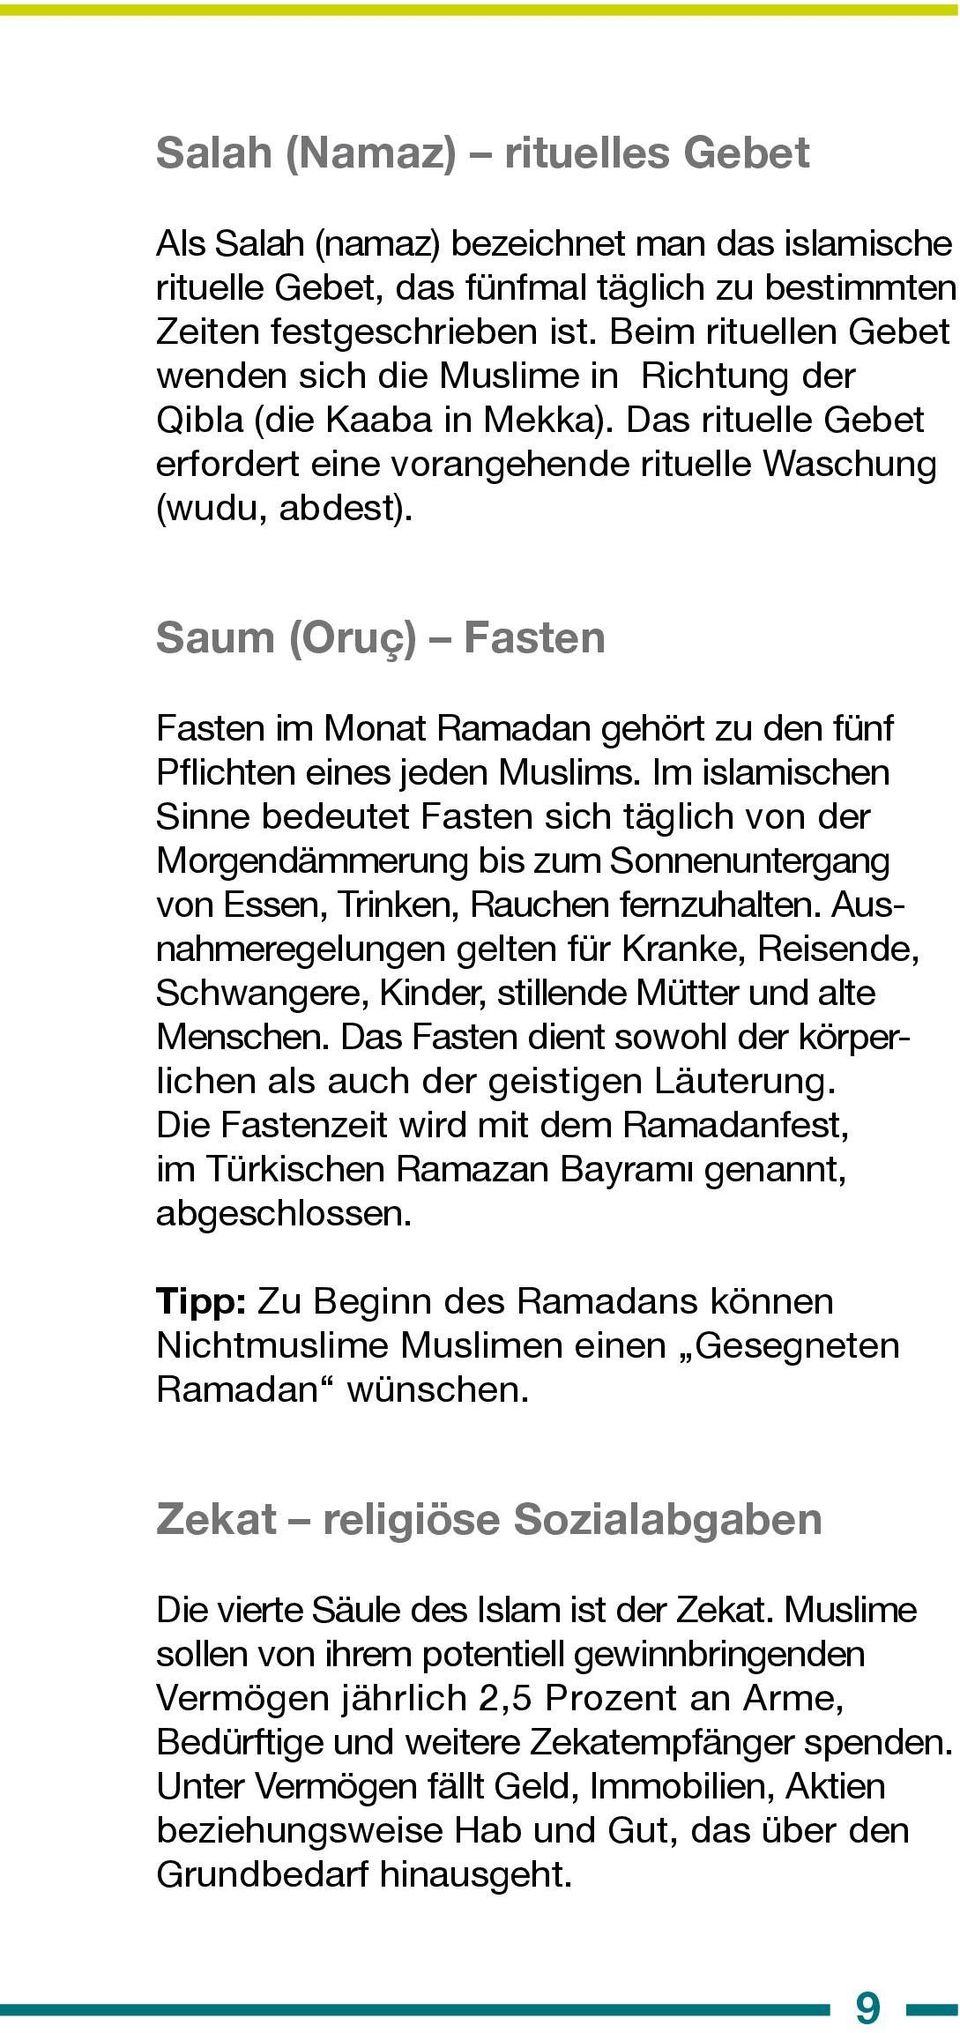 Saum (Oruç) Fasten Fasten im Monat Ramadan gehört zu den fünf Pflichten eines jeden Muslims.